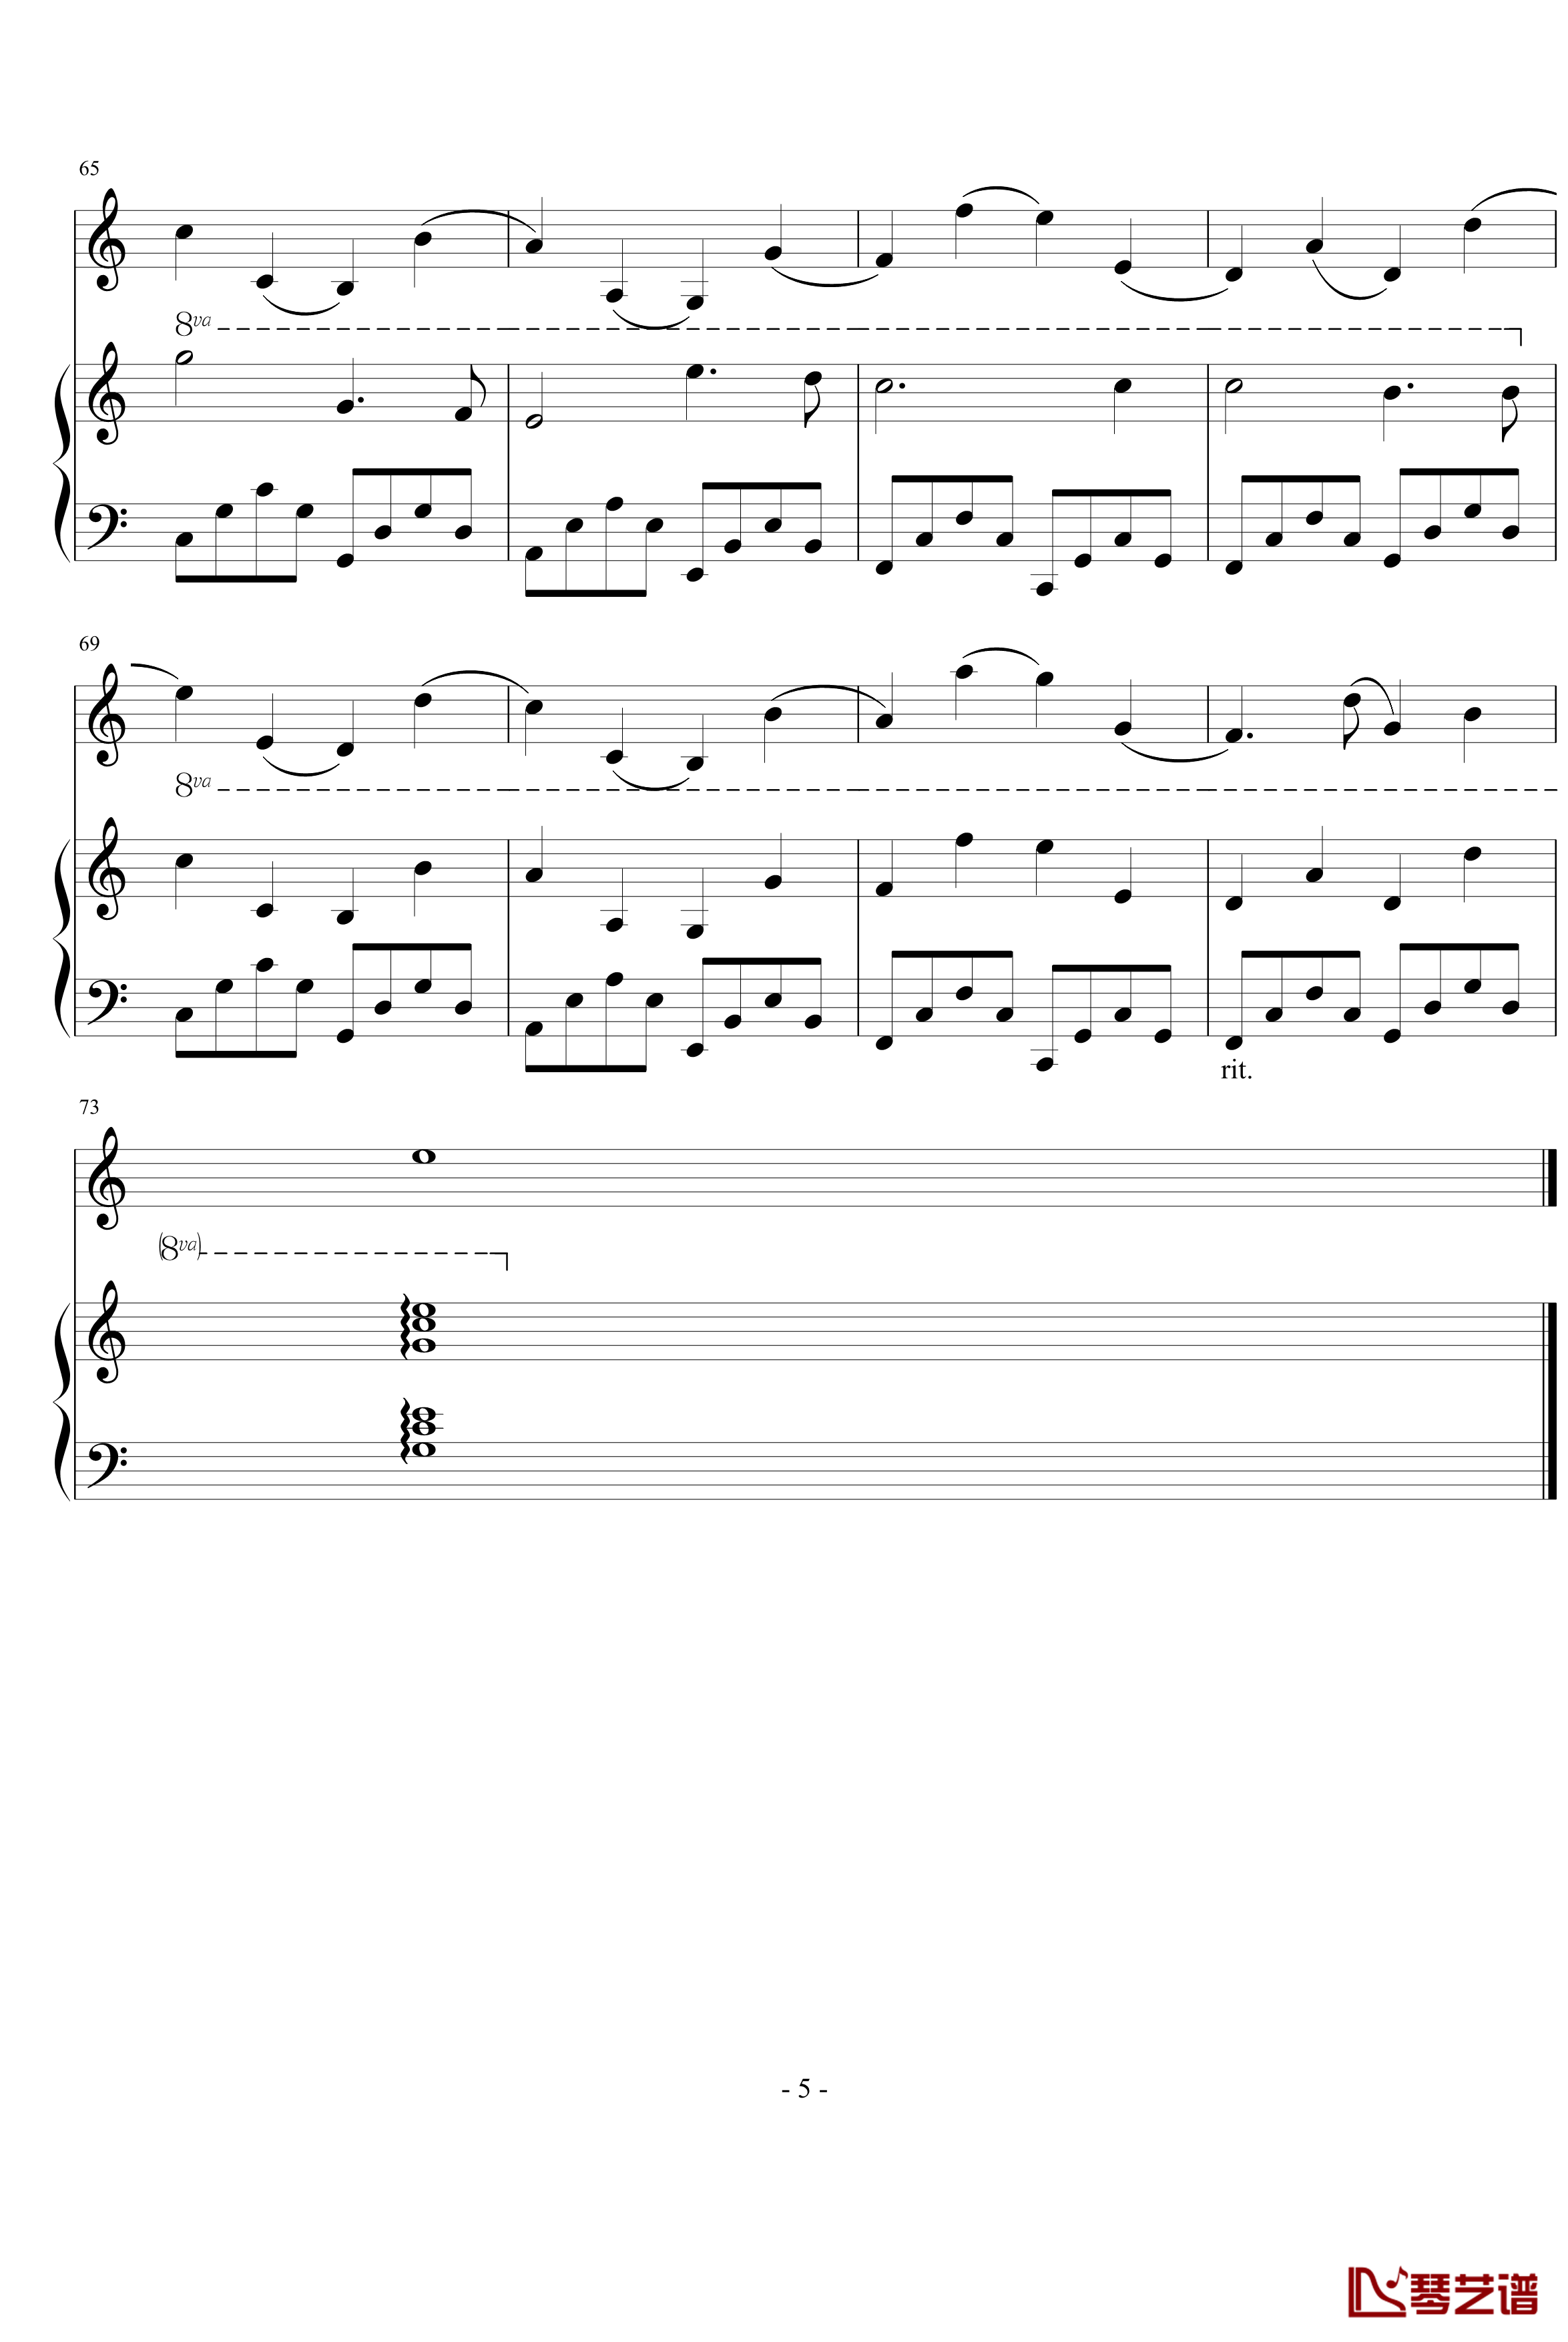 卡农小提琴+钢琴版钢琴谱-动画金色琴弦-帕赫贝尔-Pachelbel5